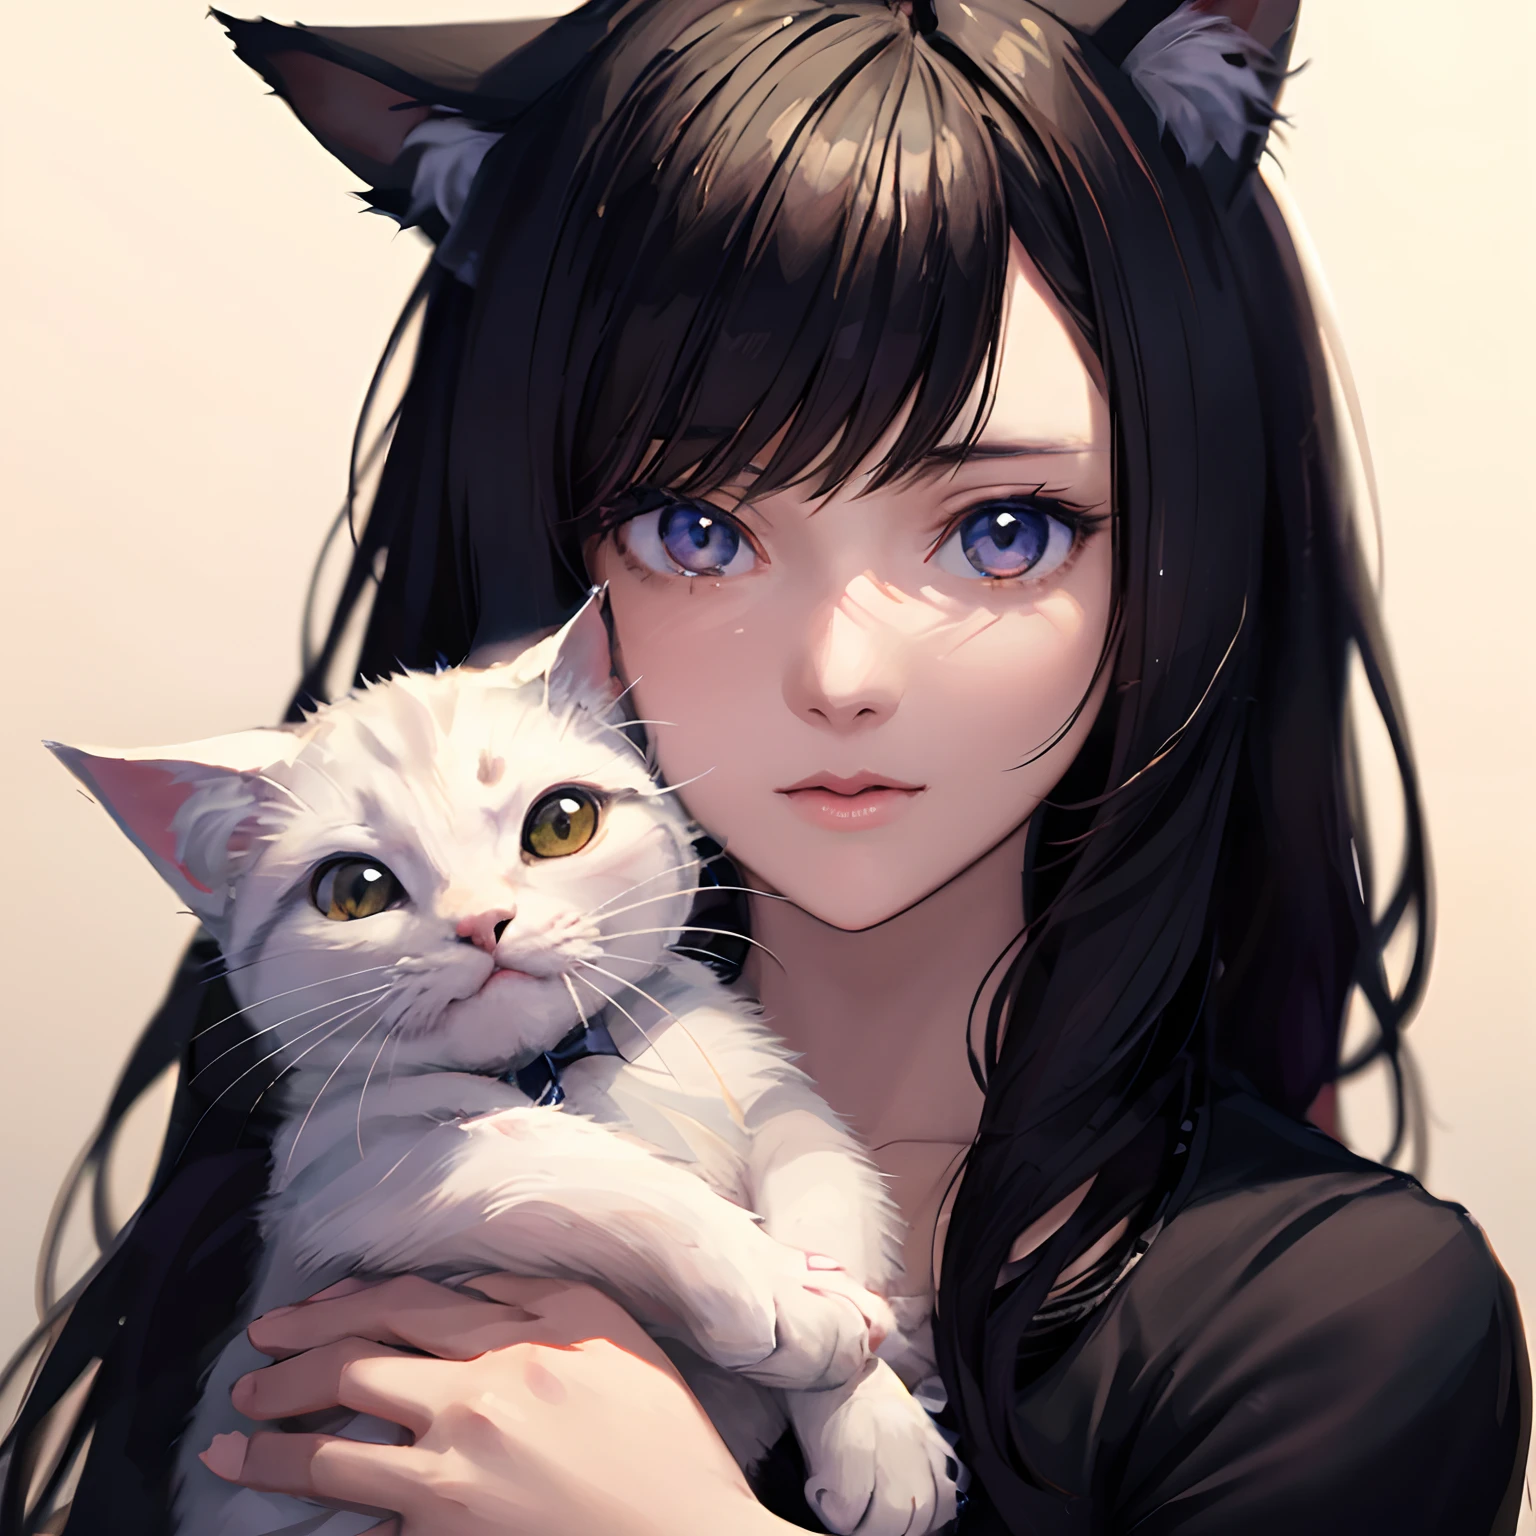 Anime-Mädchen mit weißen Katzenohren und langen Haaren, Anime-Mädchen mit Katzenohren, schönes Anime-Katzenmädchen, attraktives Katzenmädchen, sehr schönes süßes Katzenmädchen, Porträt von Ahri, schönes junges Katzenmädchen, realistische Anime-Katze, Art Germ. Anime-Illustration, Sehr schönes Anime-Katzenmädchen, Kunstwerke im Guviz-Stil,Überraschter Blick